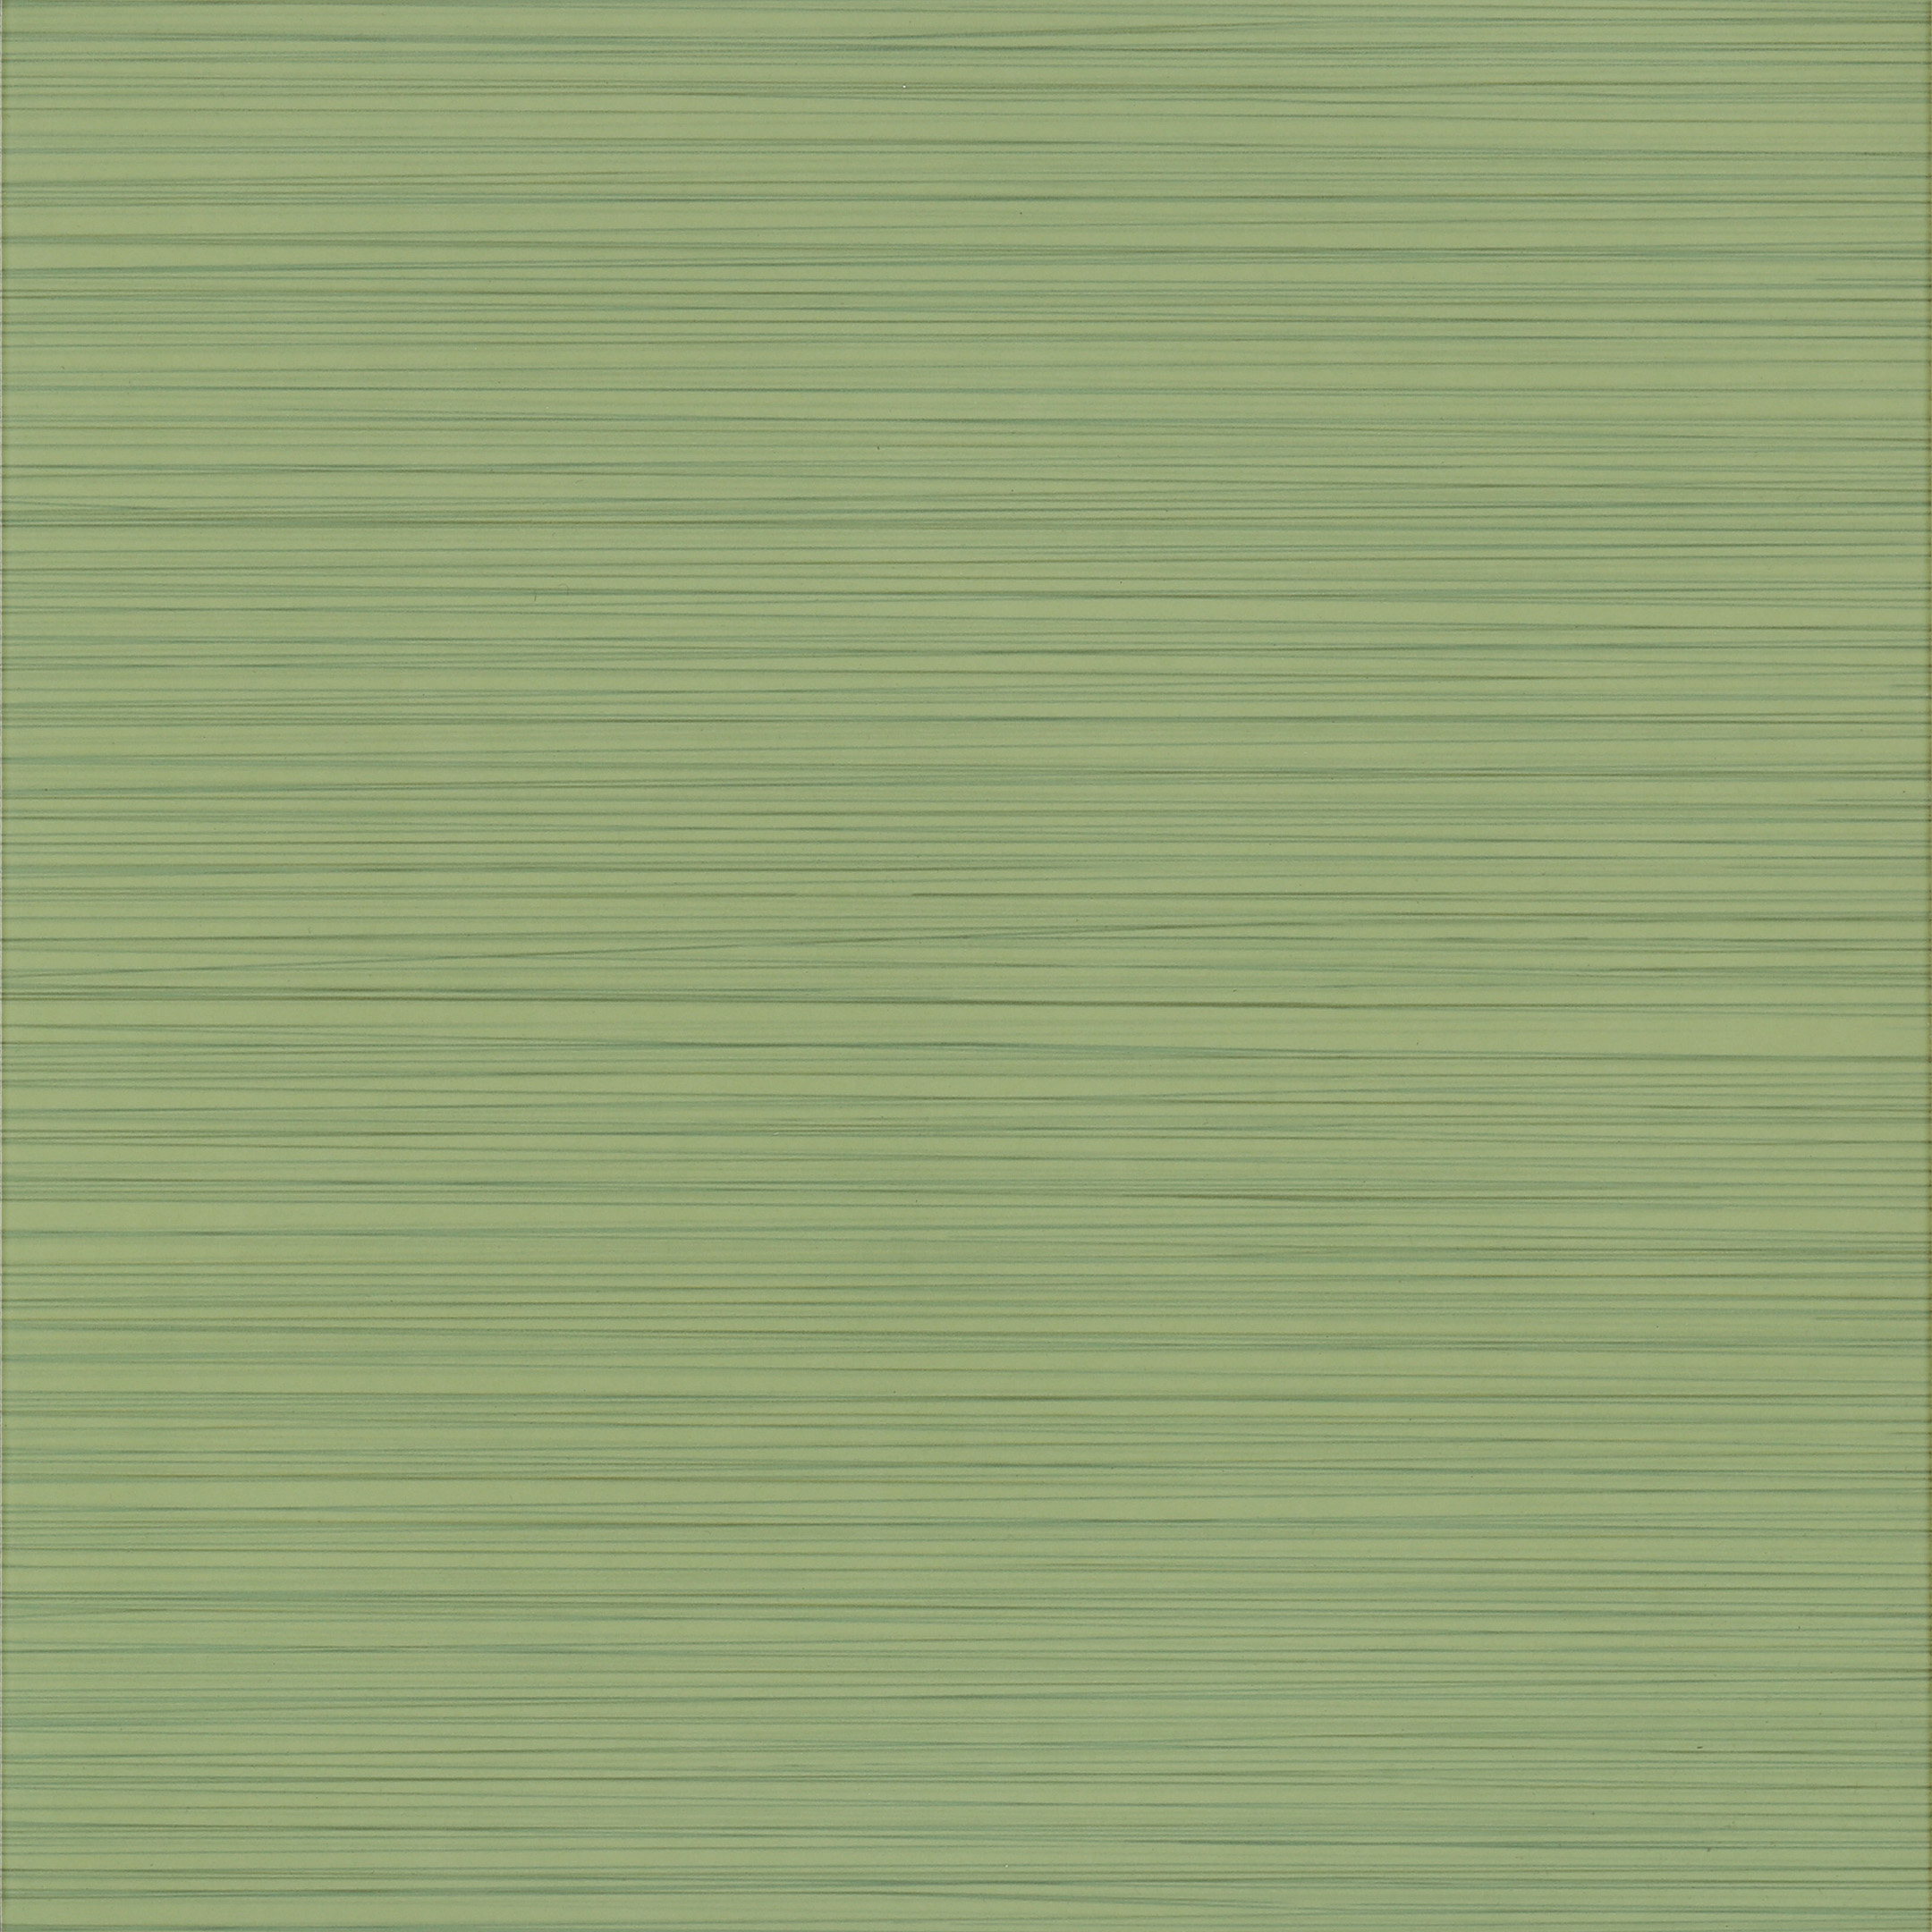 фото Керамогранит cersanit light зеленый 326x326x8,3 мм (12 шт.=1,275 кв.м)